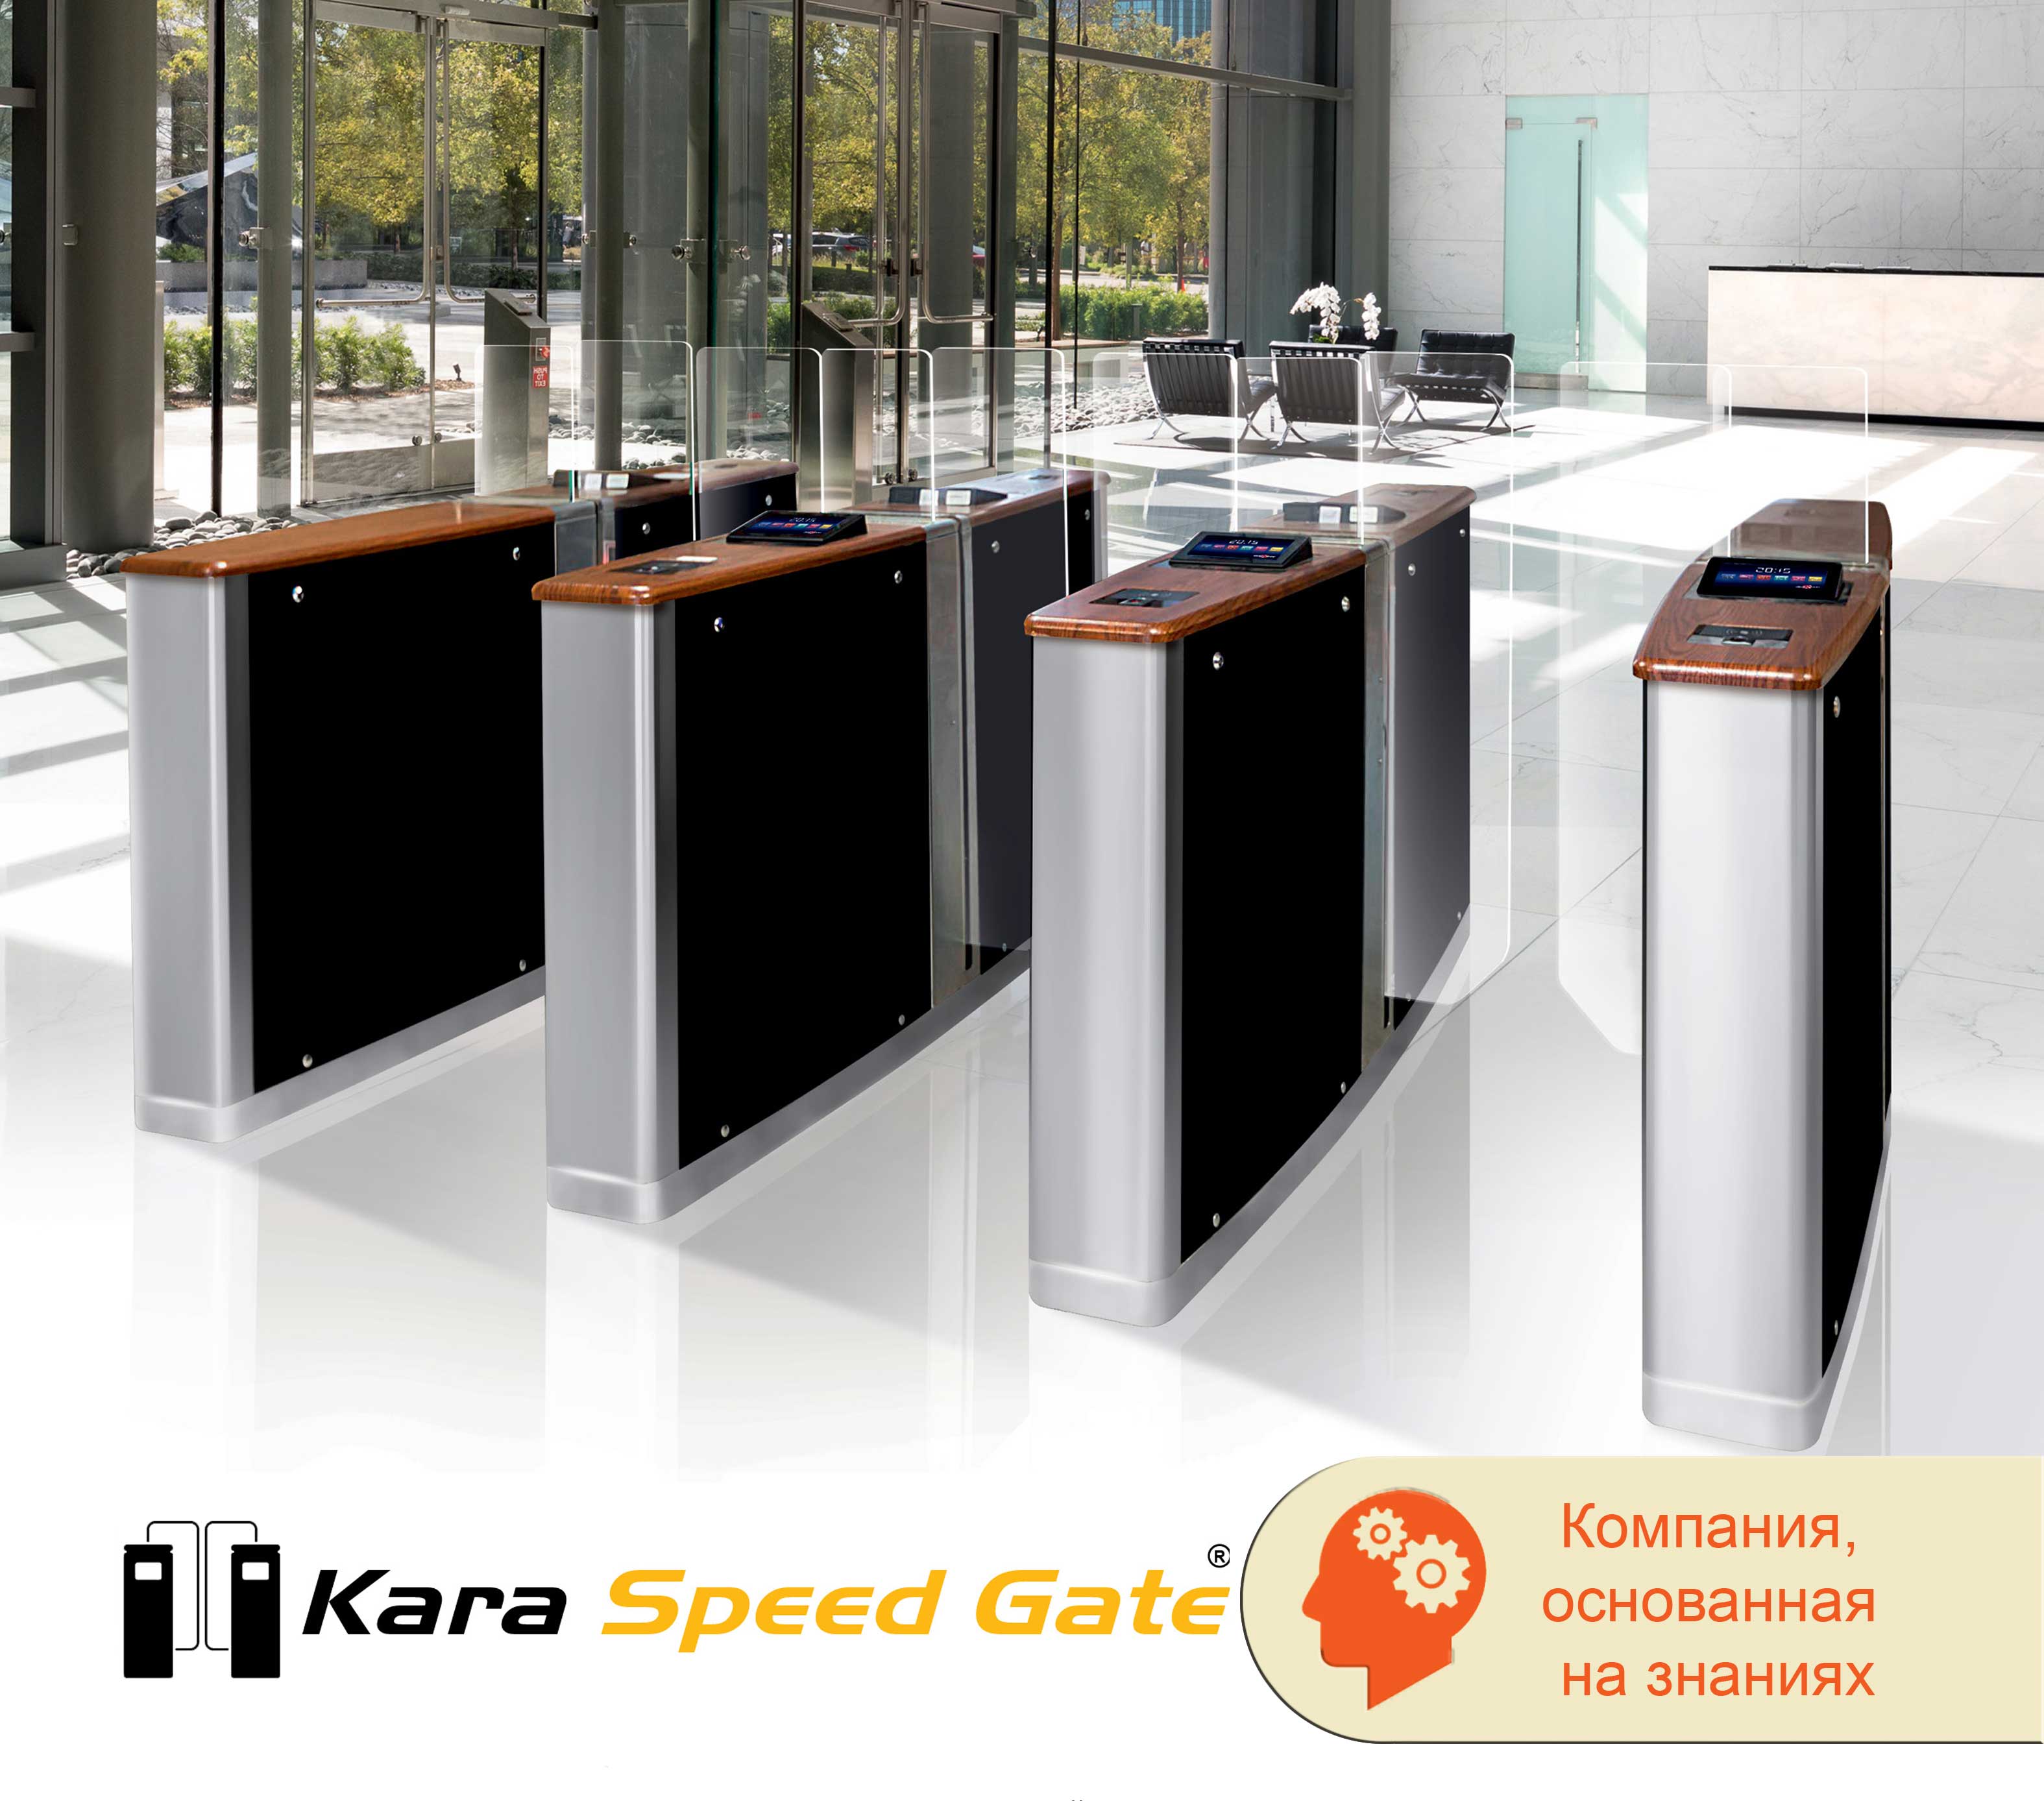 KARA Speed Gate